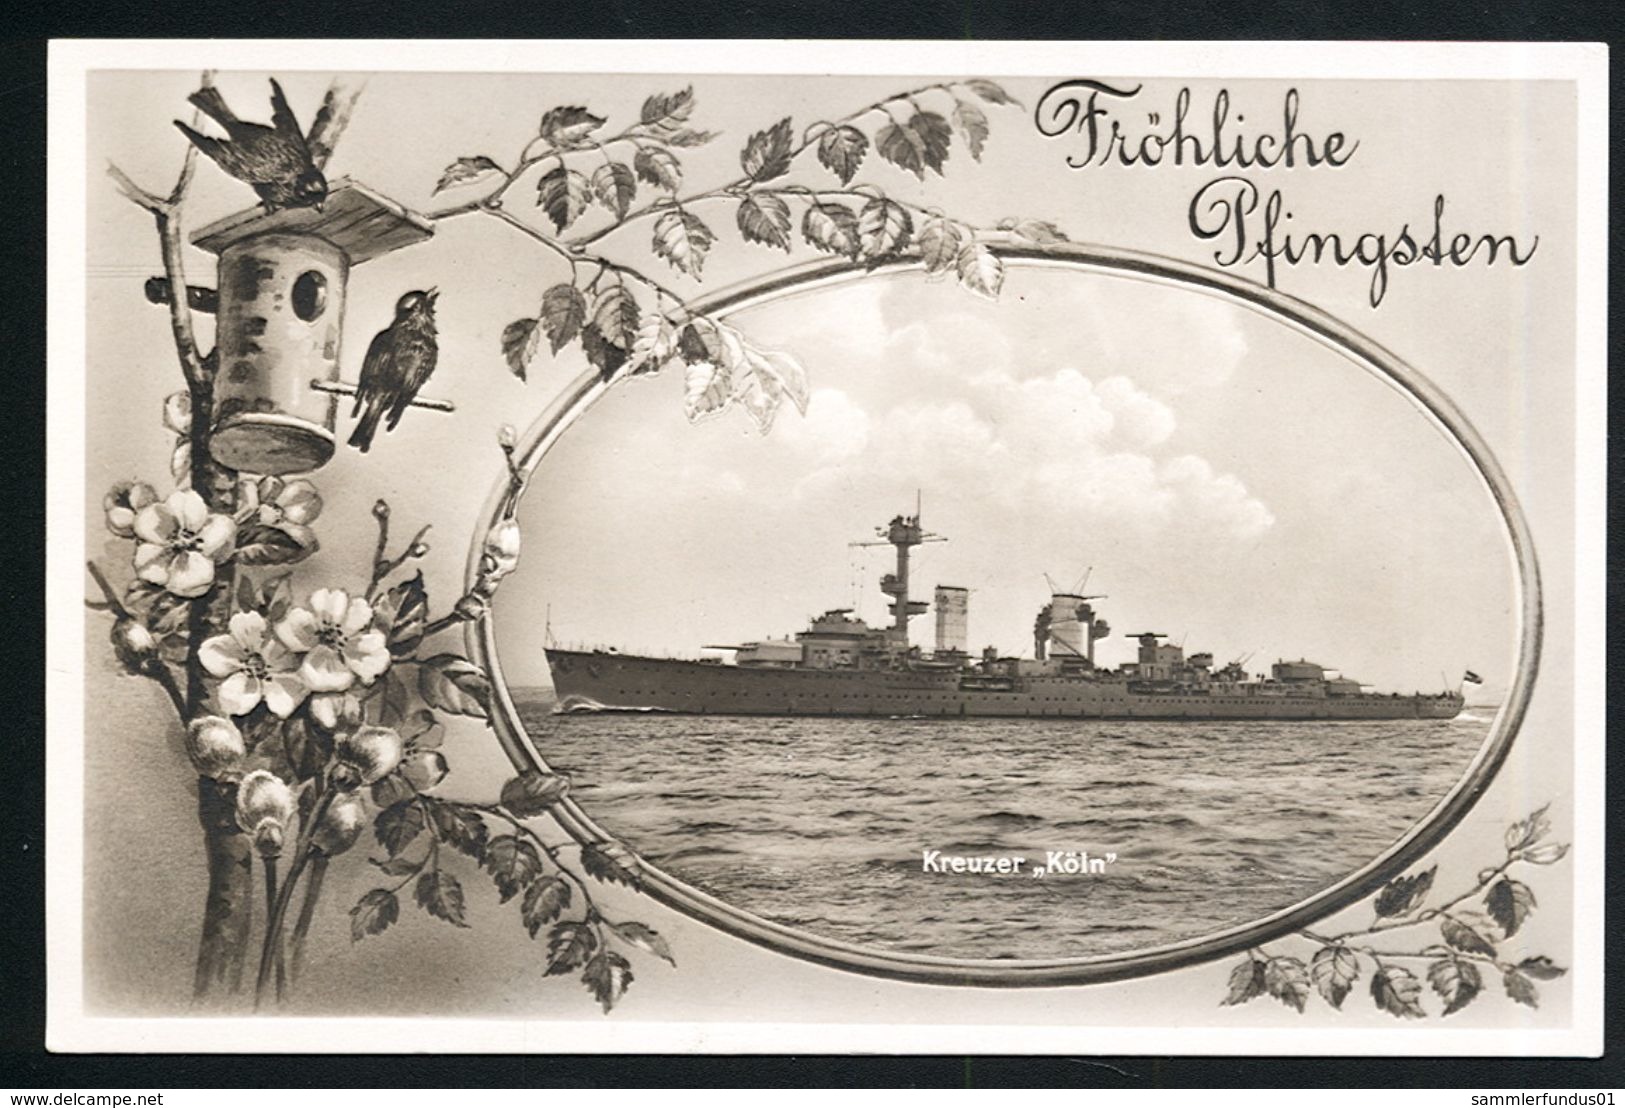 AK/CP Marine Kreuzer Köln  Reichsmarine  German Navy    Ungel/uncirc. Ca. 1932    Erhaltung/Cond.  1- / 2    Nr. 00308 - Warships